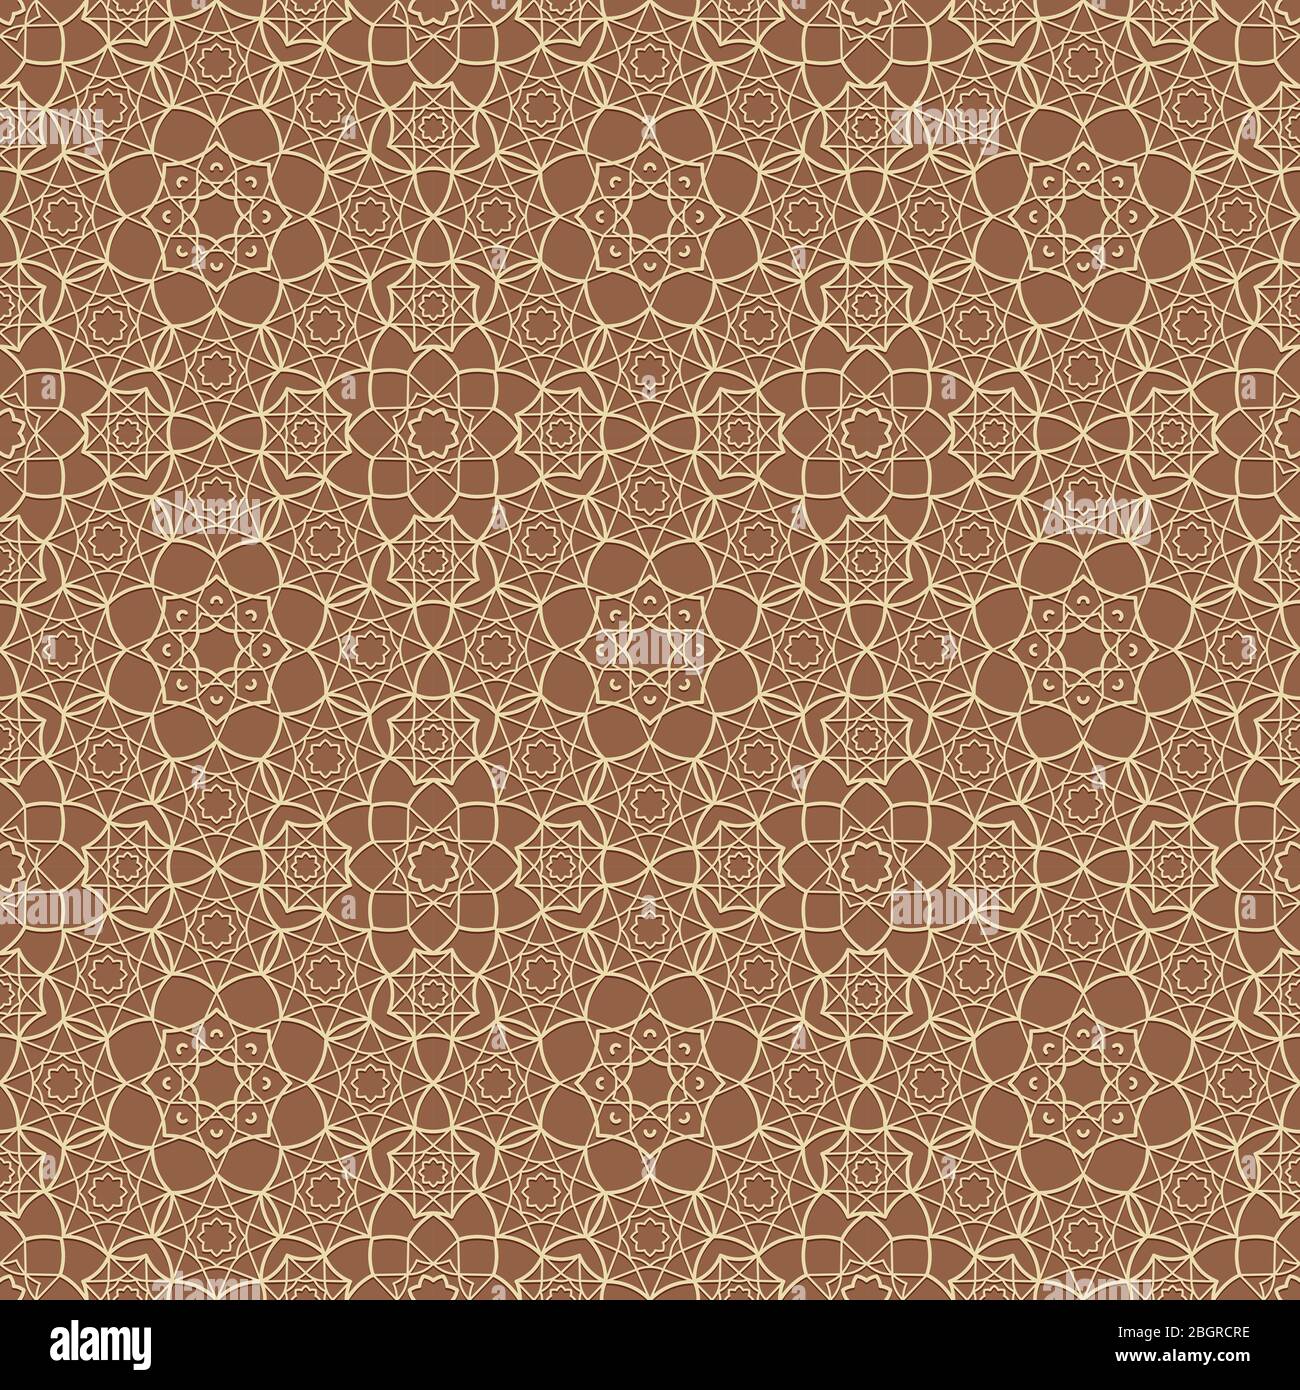 Islamische Blumenmuster arabischen Hintergrund. Vektorgrafik Stock Vektor